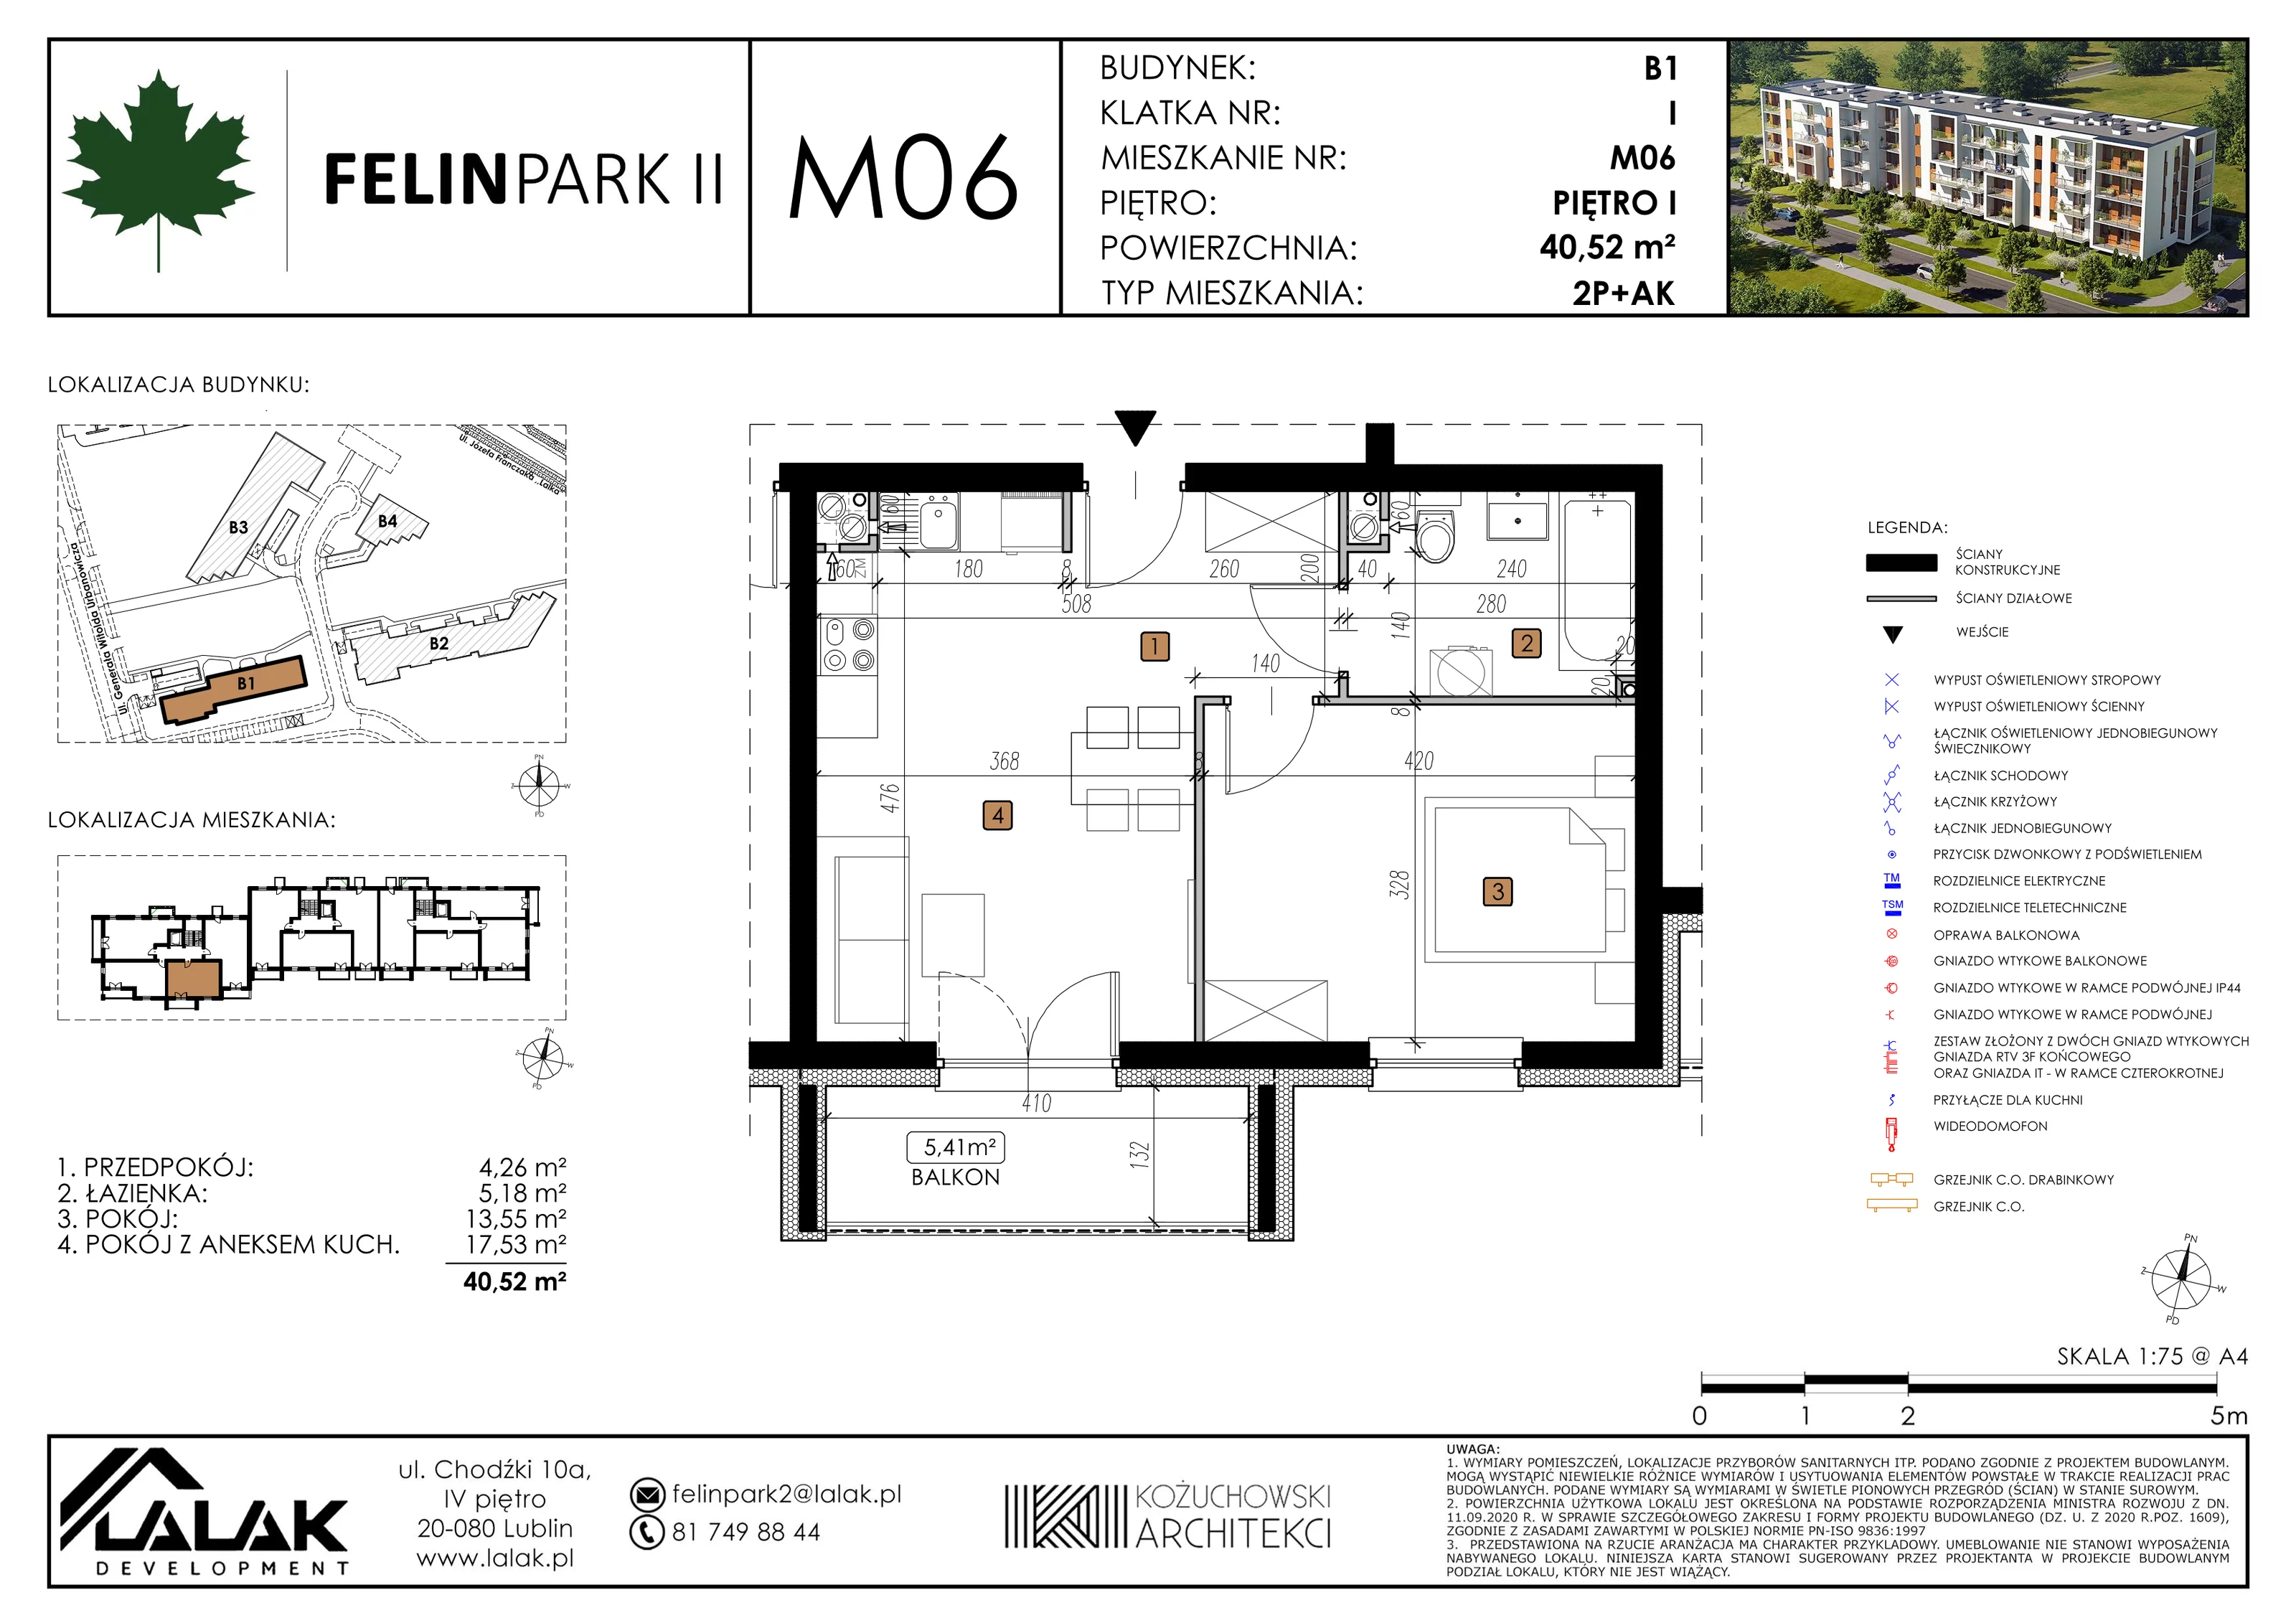 Mieszkanie 40,52 m², piętro 1, oferta nr B1_M6/I, Felin Park II, Lublin, Felin, ul. gen. Stanisława Skalskiego 8-10